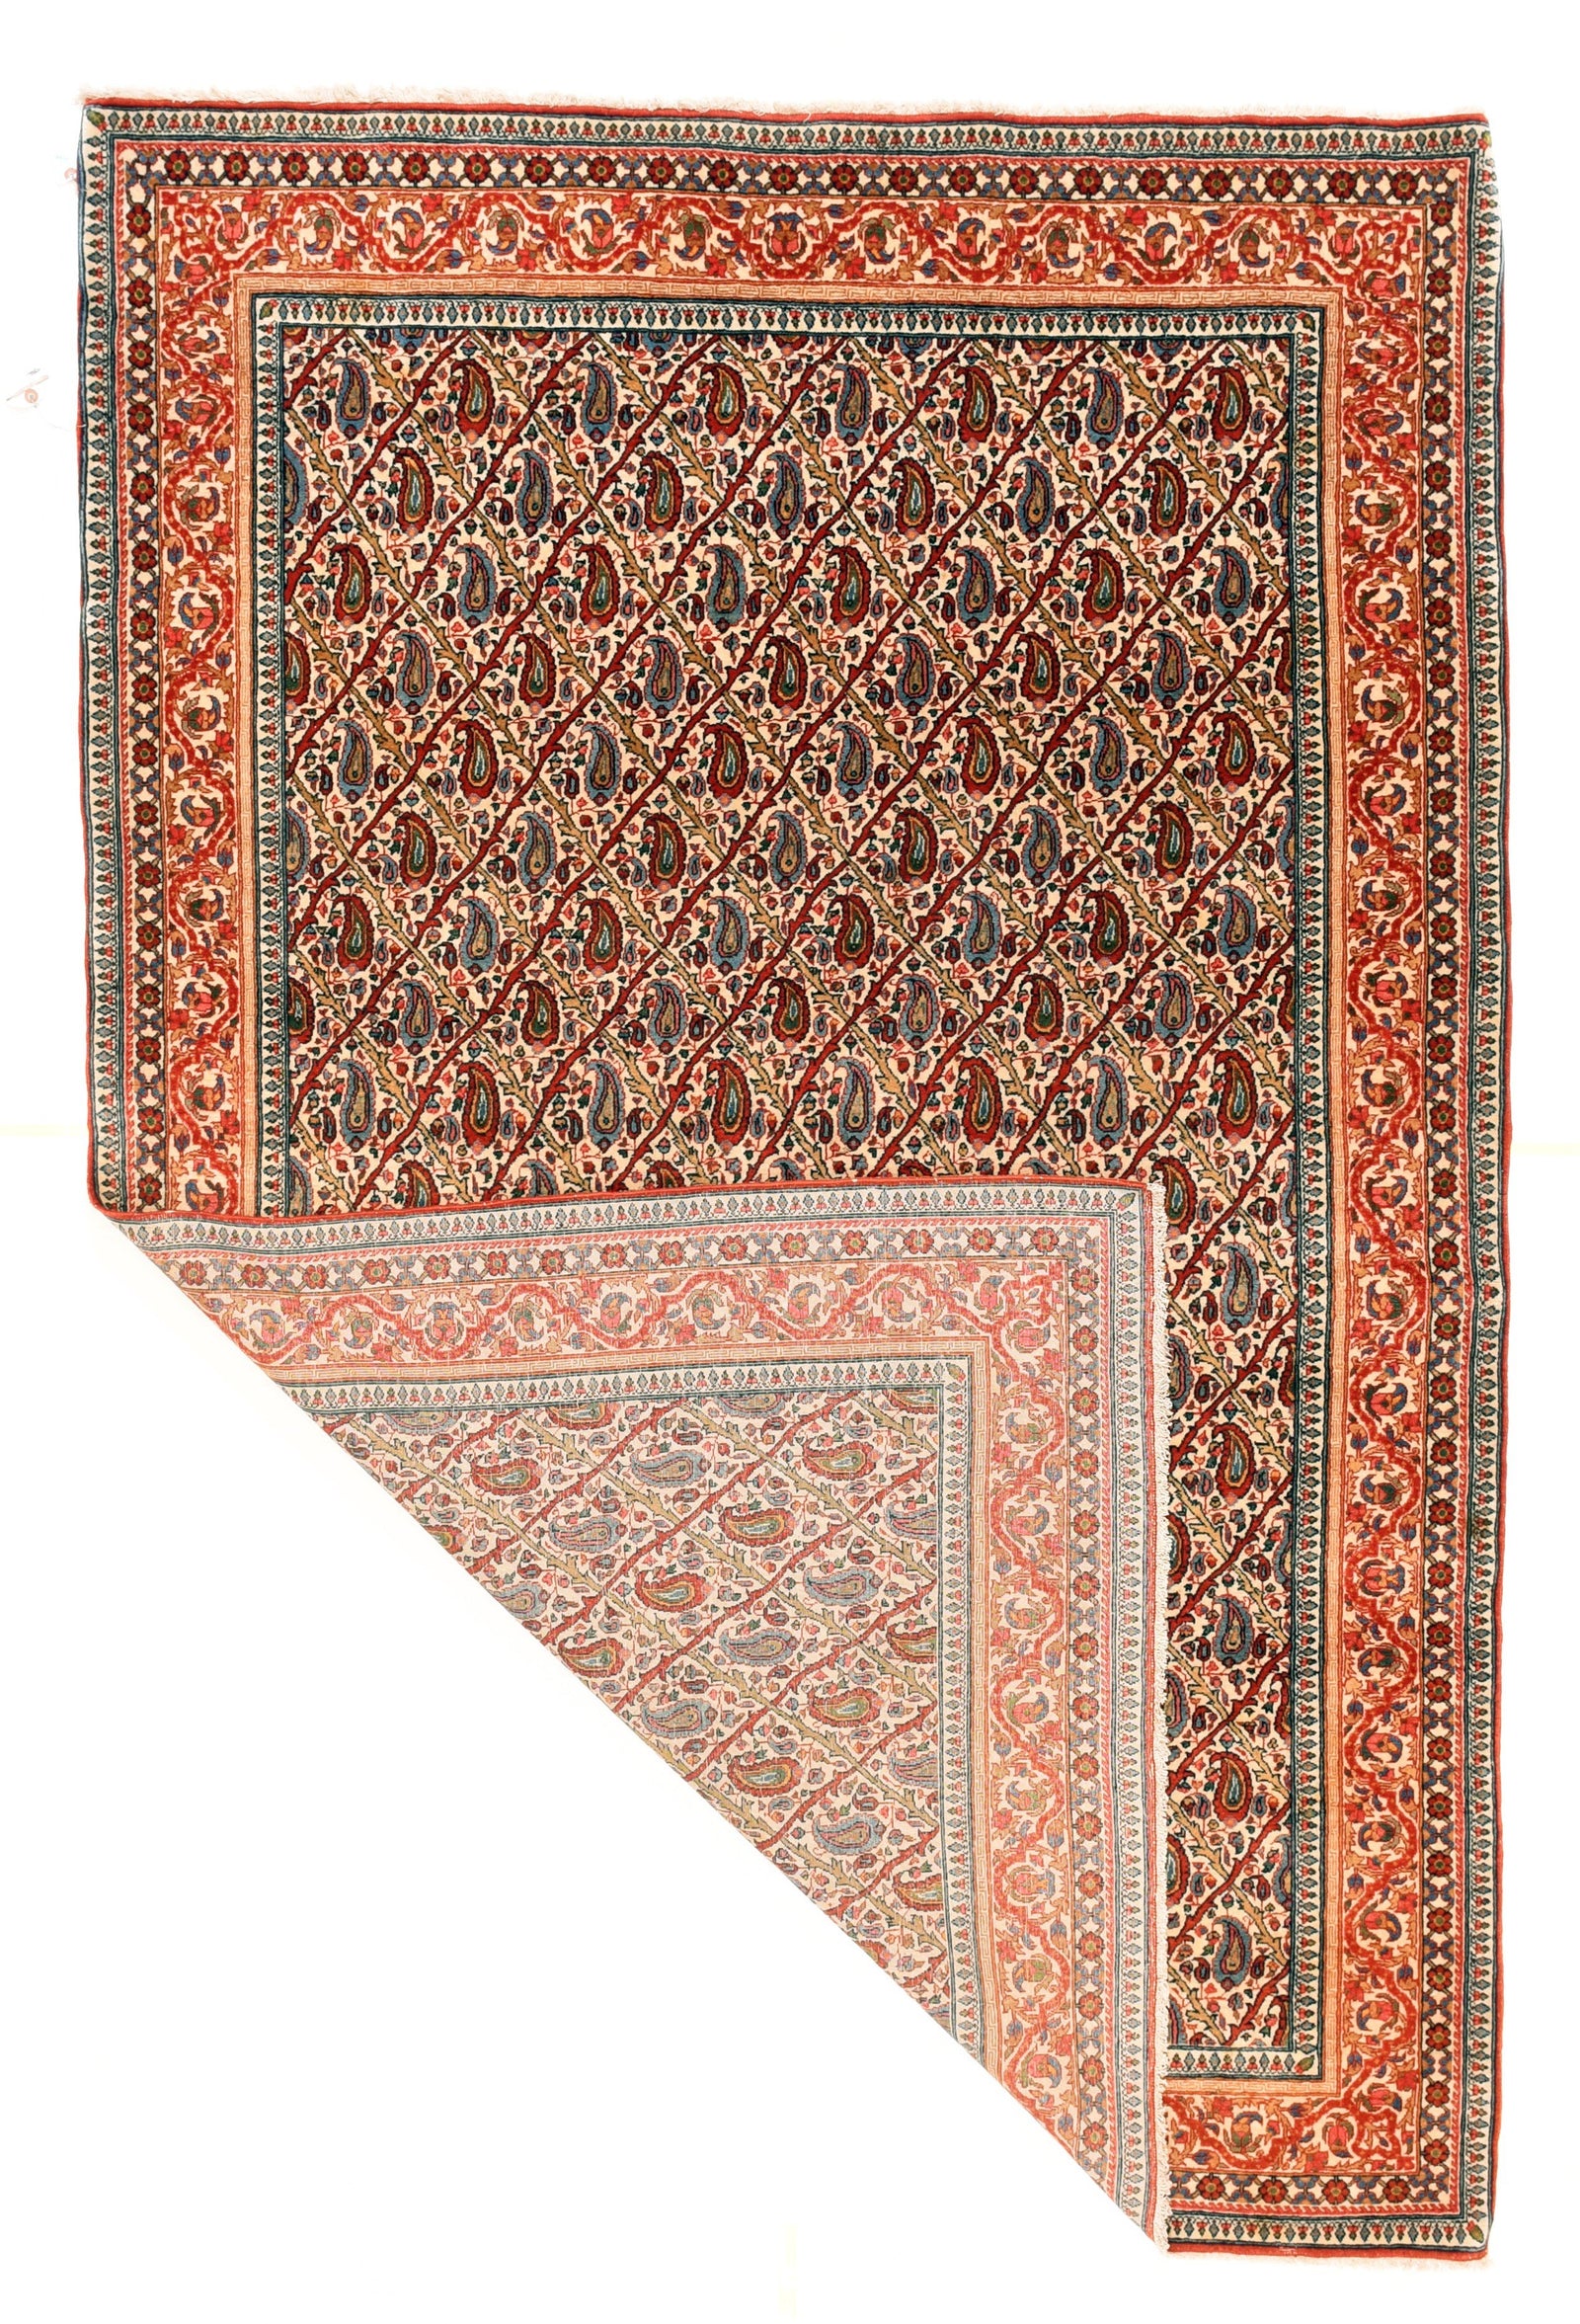 Antique Qum Persian Area Rug